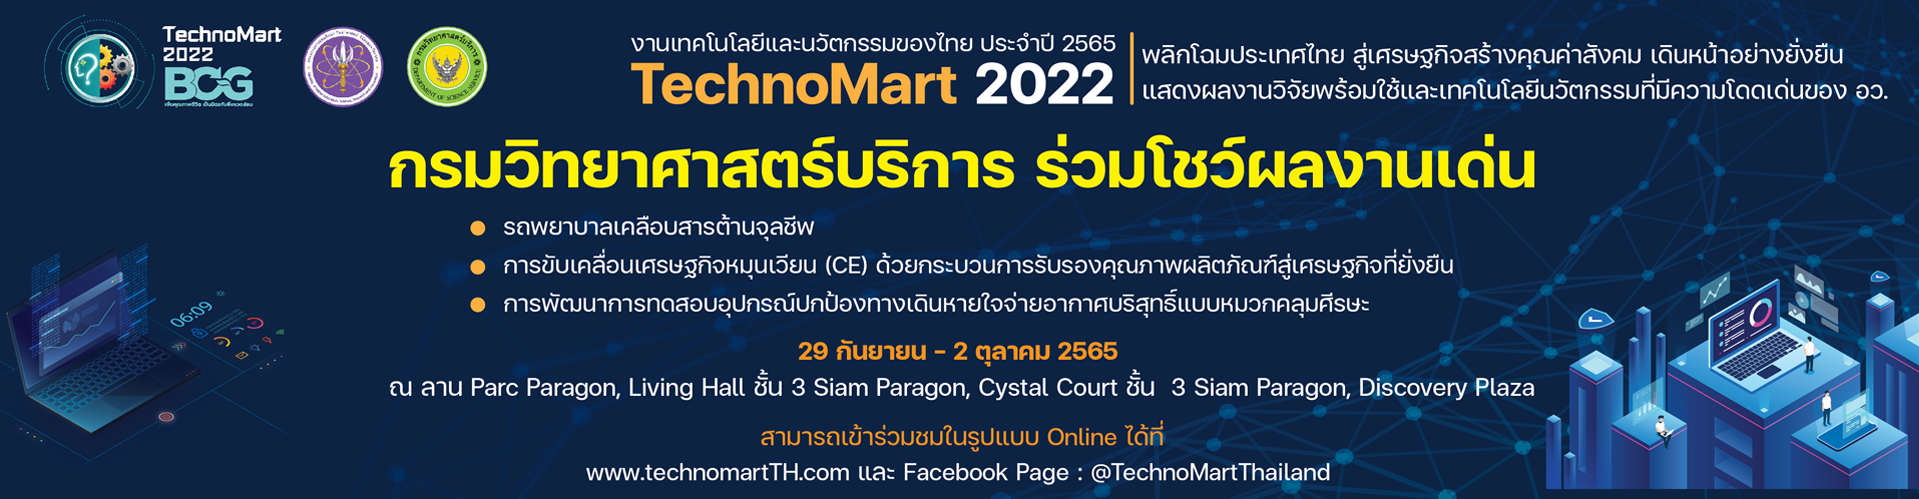 งานเทคโนโลยีและนวัตกรรมของไทย ประจำปี 2565